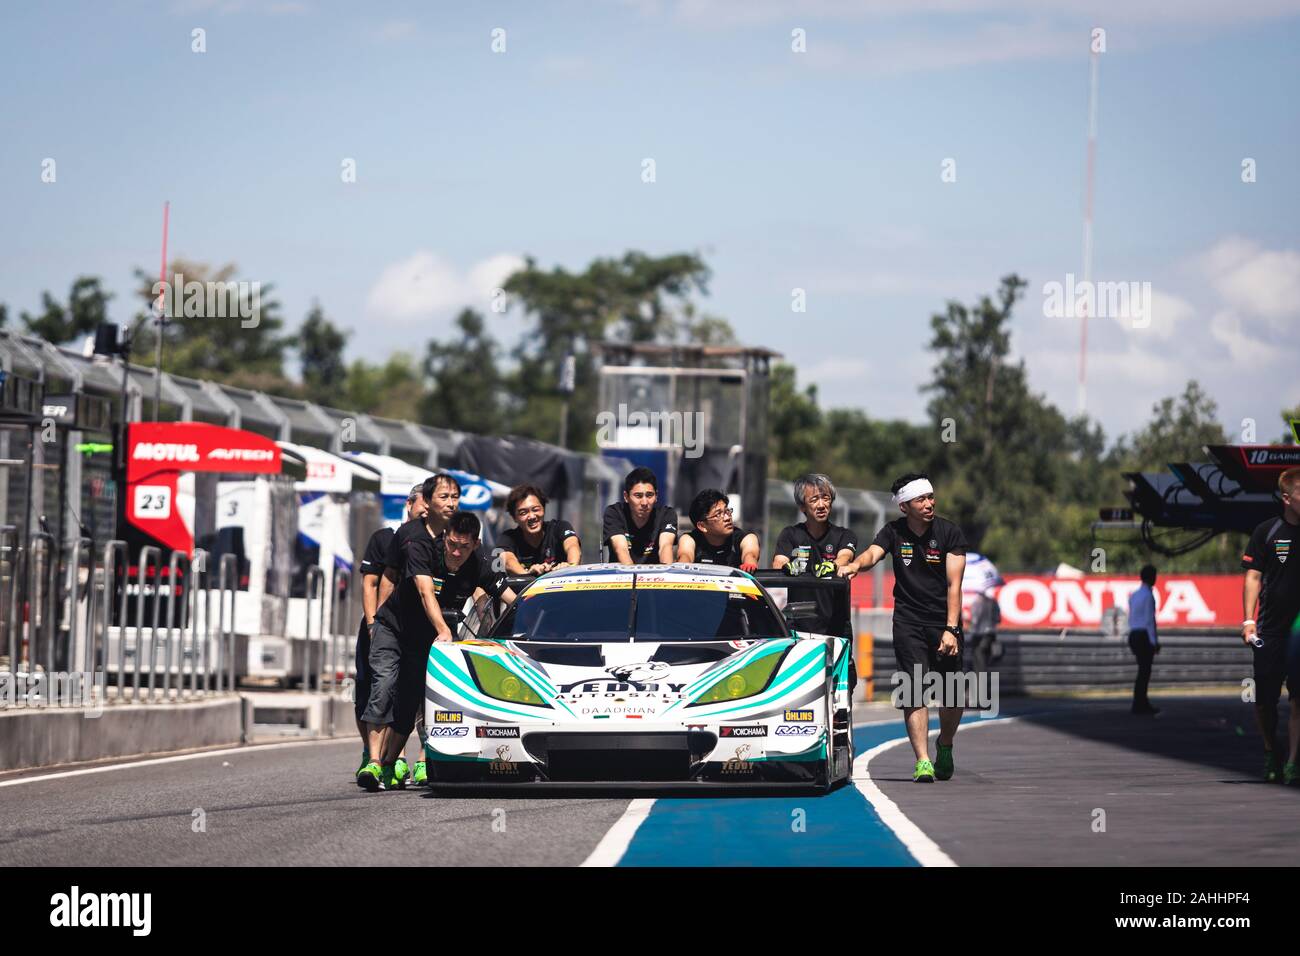 Buriram, Thaïlande - 28 juin 2019 Thaïlande : match racing SuperGT japonais, l'un des team - Teddy, poussant leur propre voiture de course ensemble sur la fosse à pied Banque D'Images